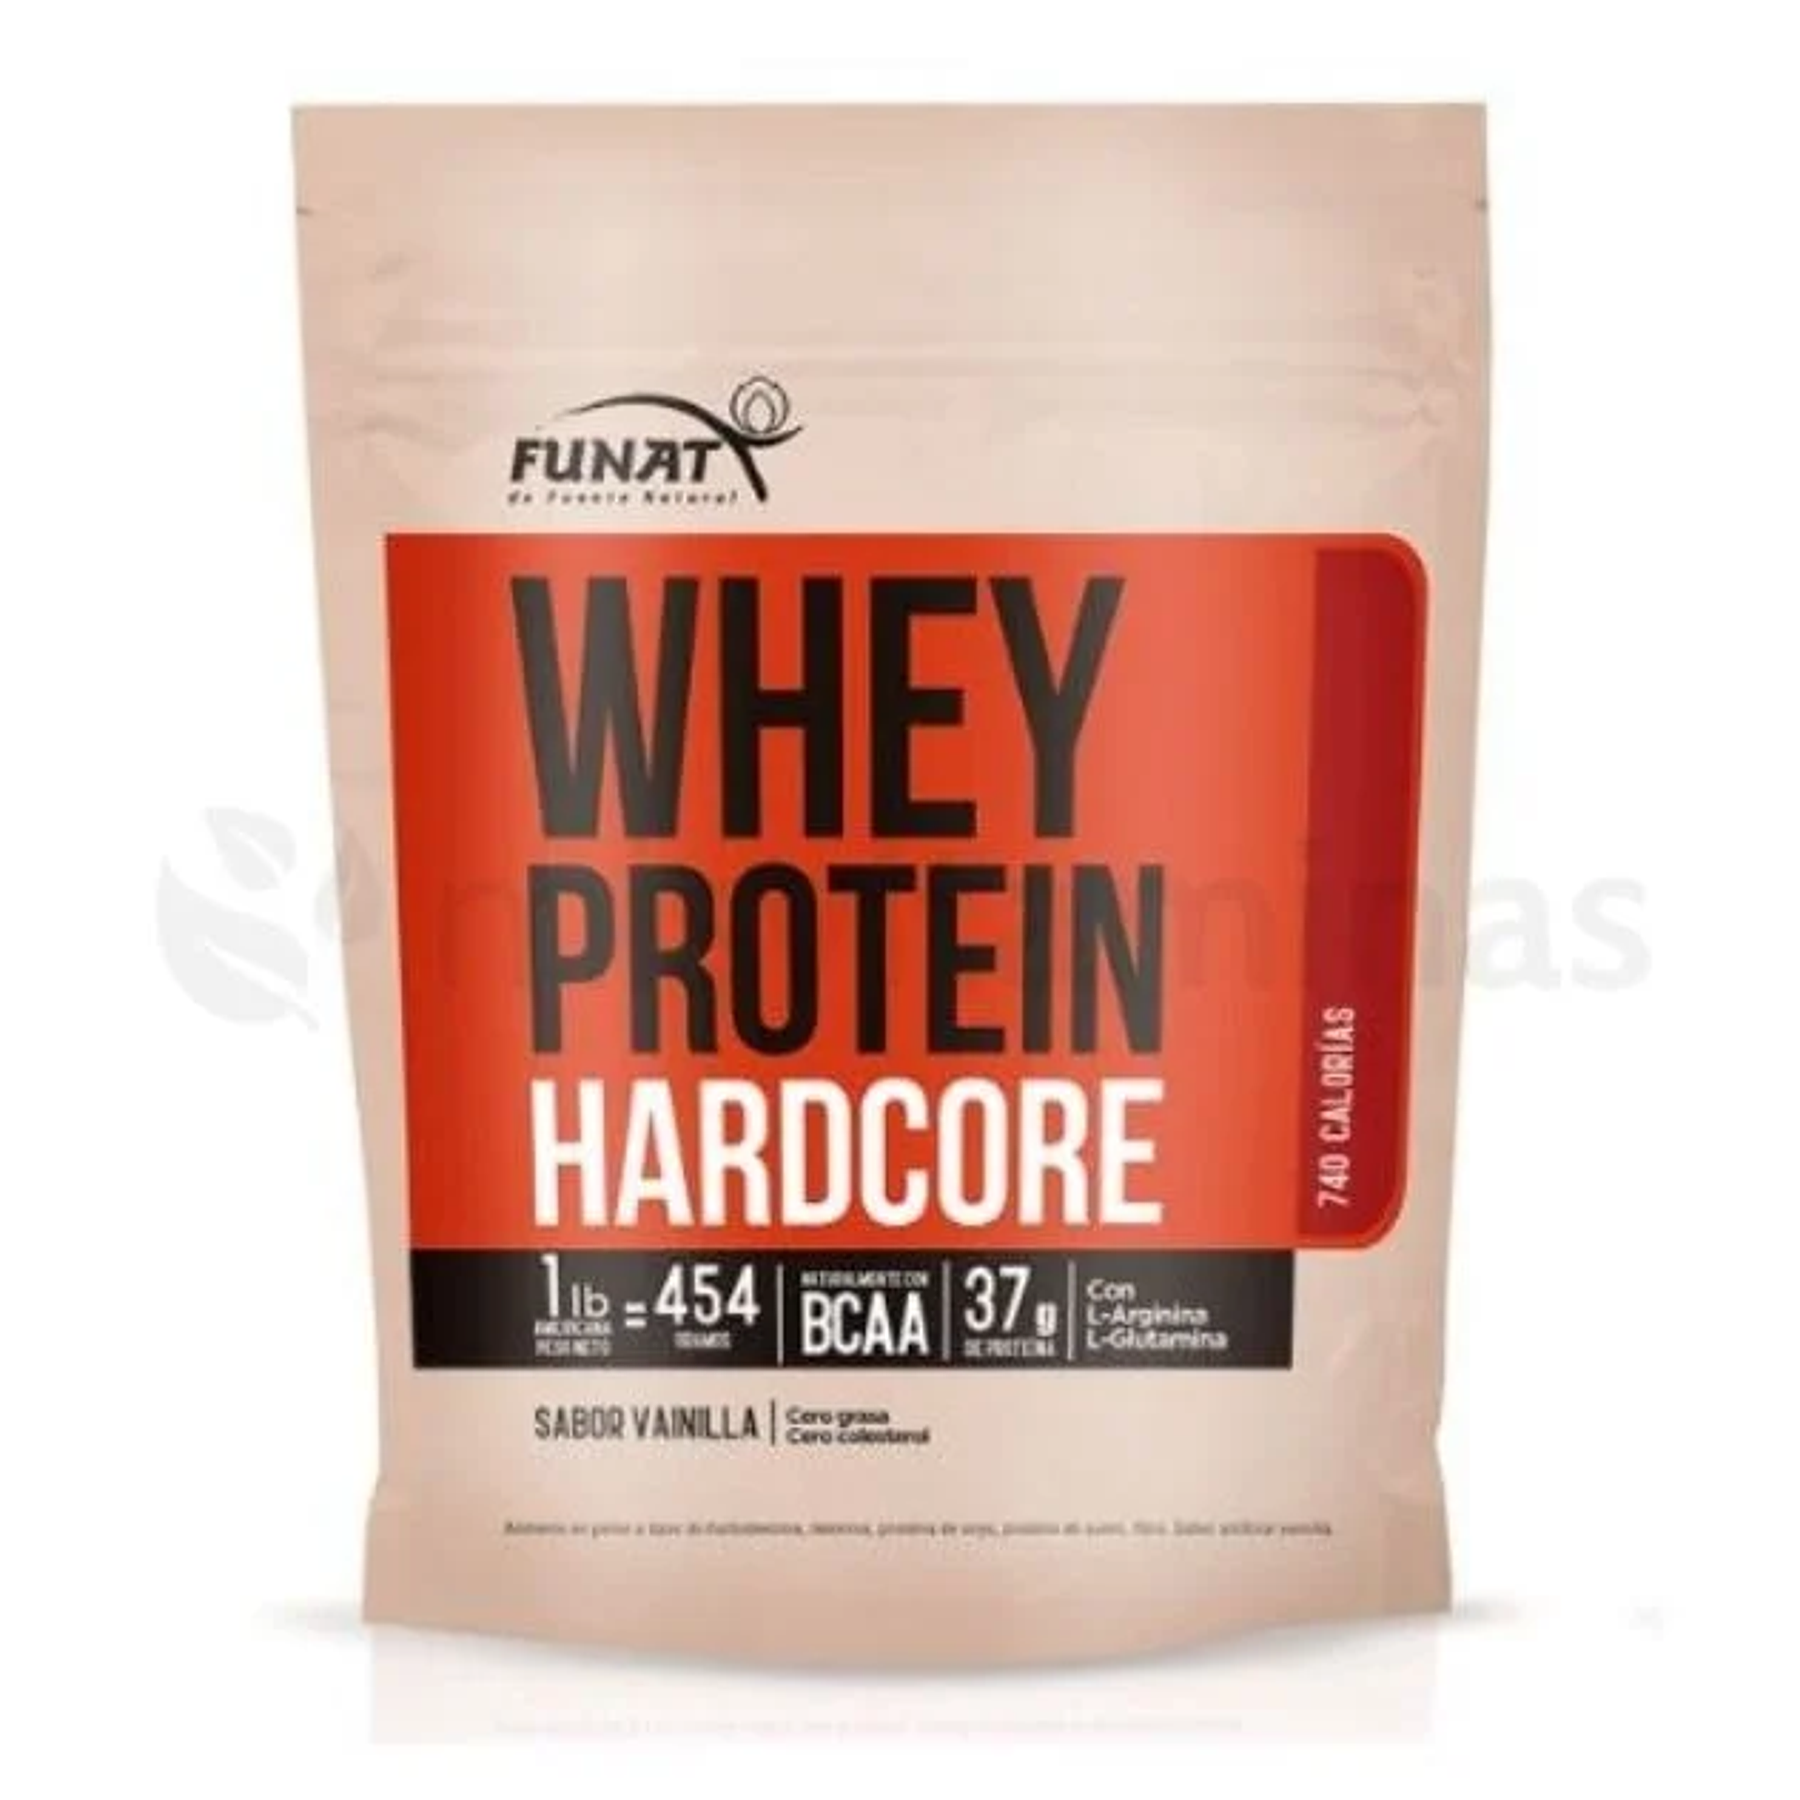 Whey Protein Hardcore 1 libra Funat